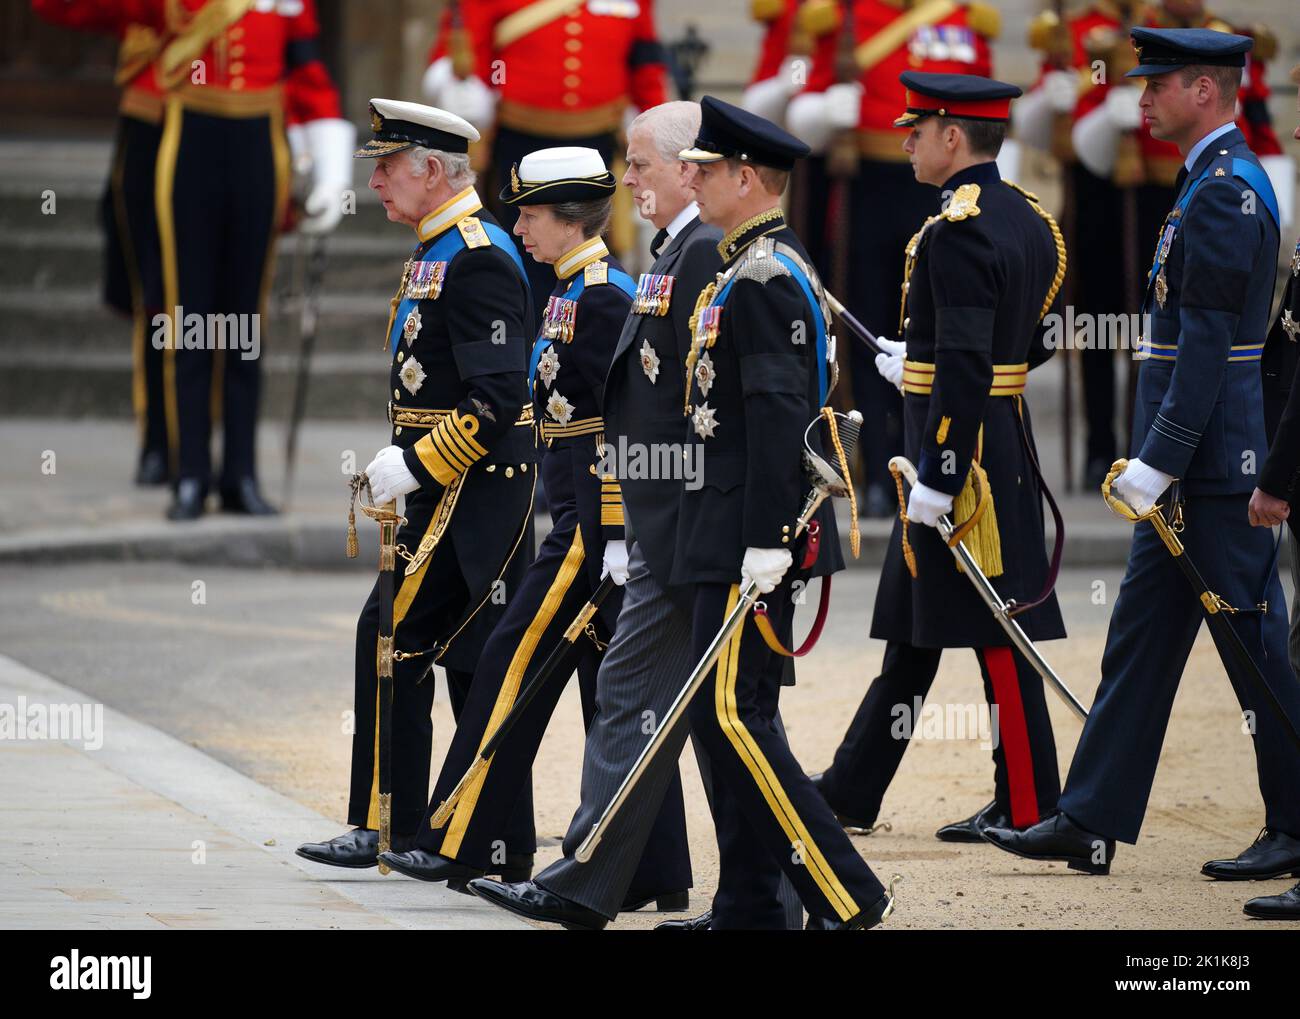 (De gauche à droite) le roi Charles III la princesse royale le duc d'York le comte de Wessex et le prince de Galles arrivant au funérailles d'État de la reine Elizabeth II, tenue à l'abbaye de Westminster, Londres. Date de la photo: Lundi 19 septembre 2022. Banque D'Images